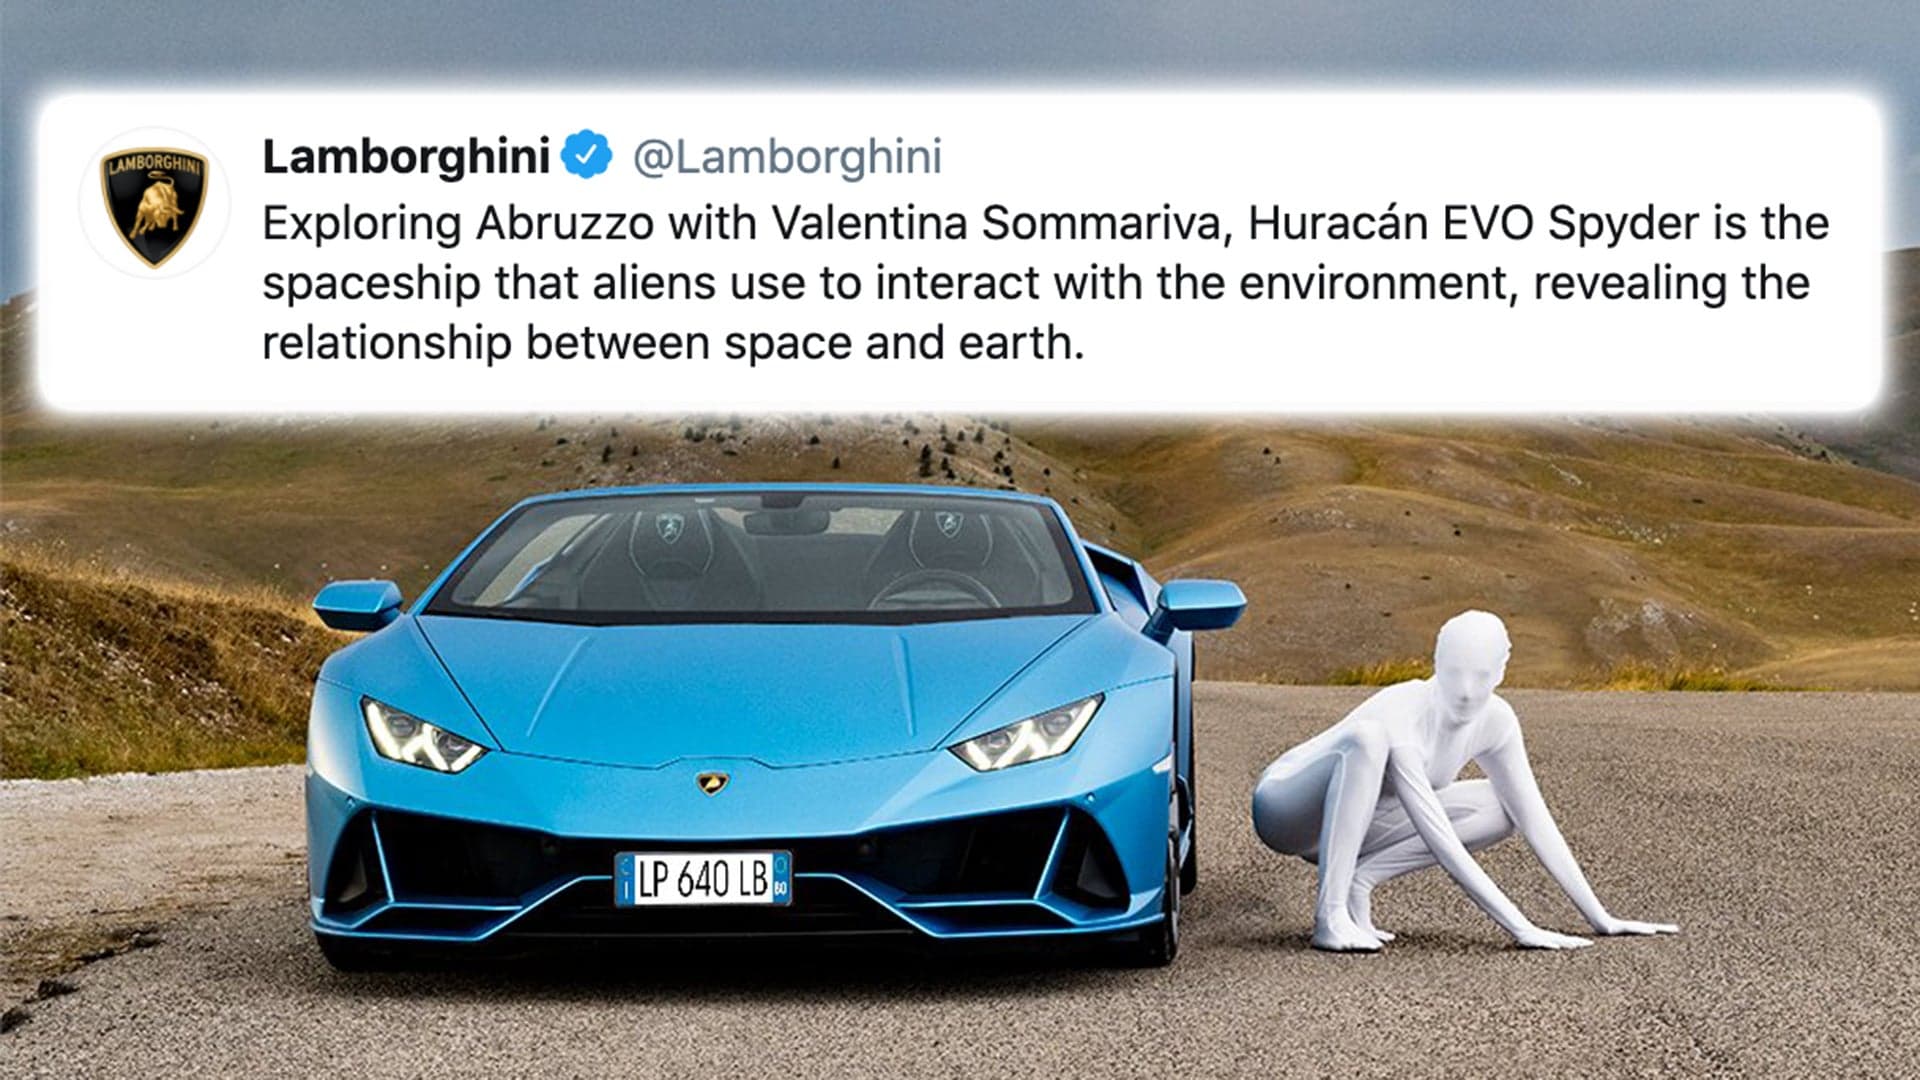 Let’s Check In On Lamborghini… Oh. Okay